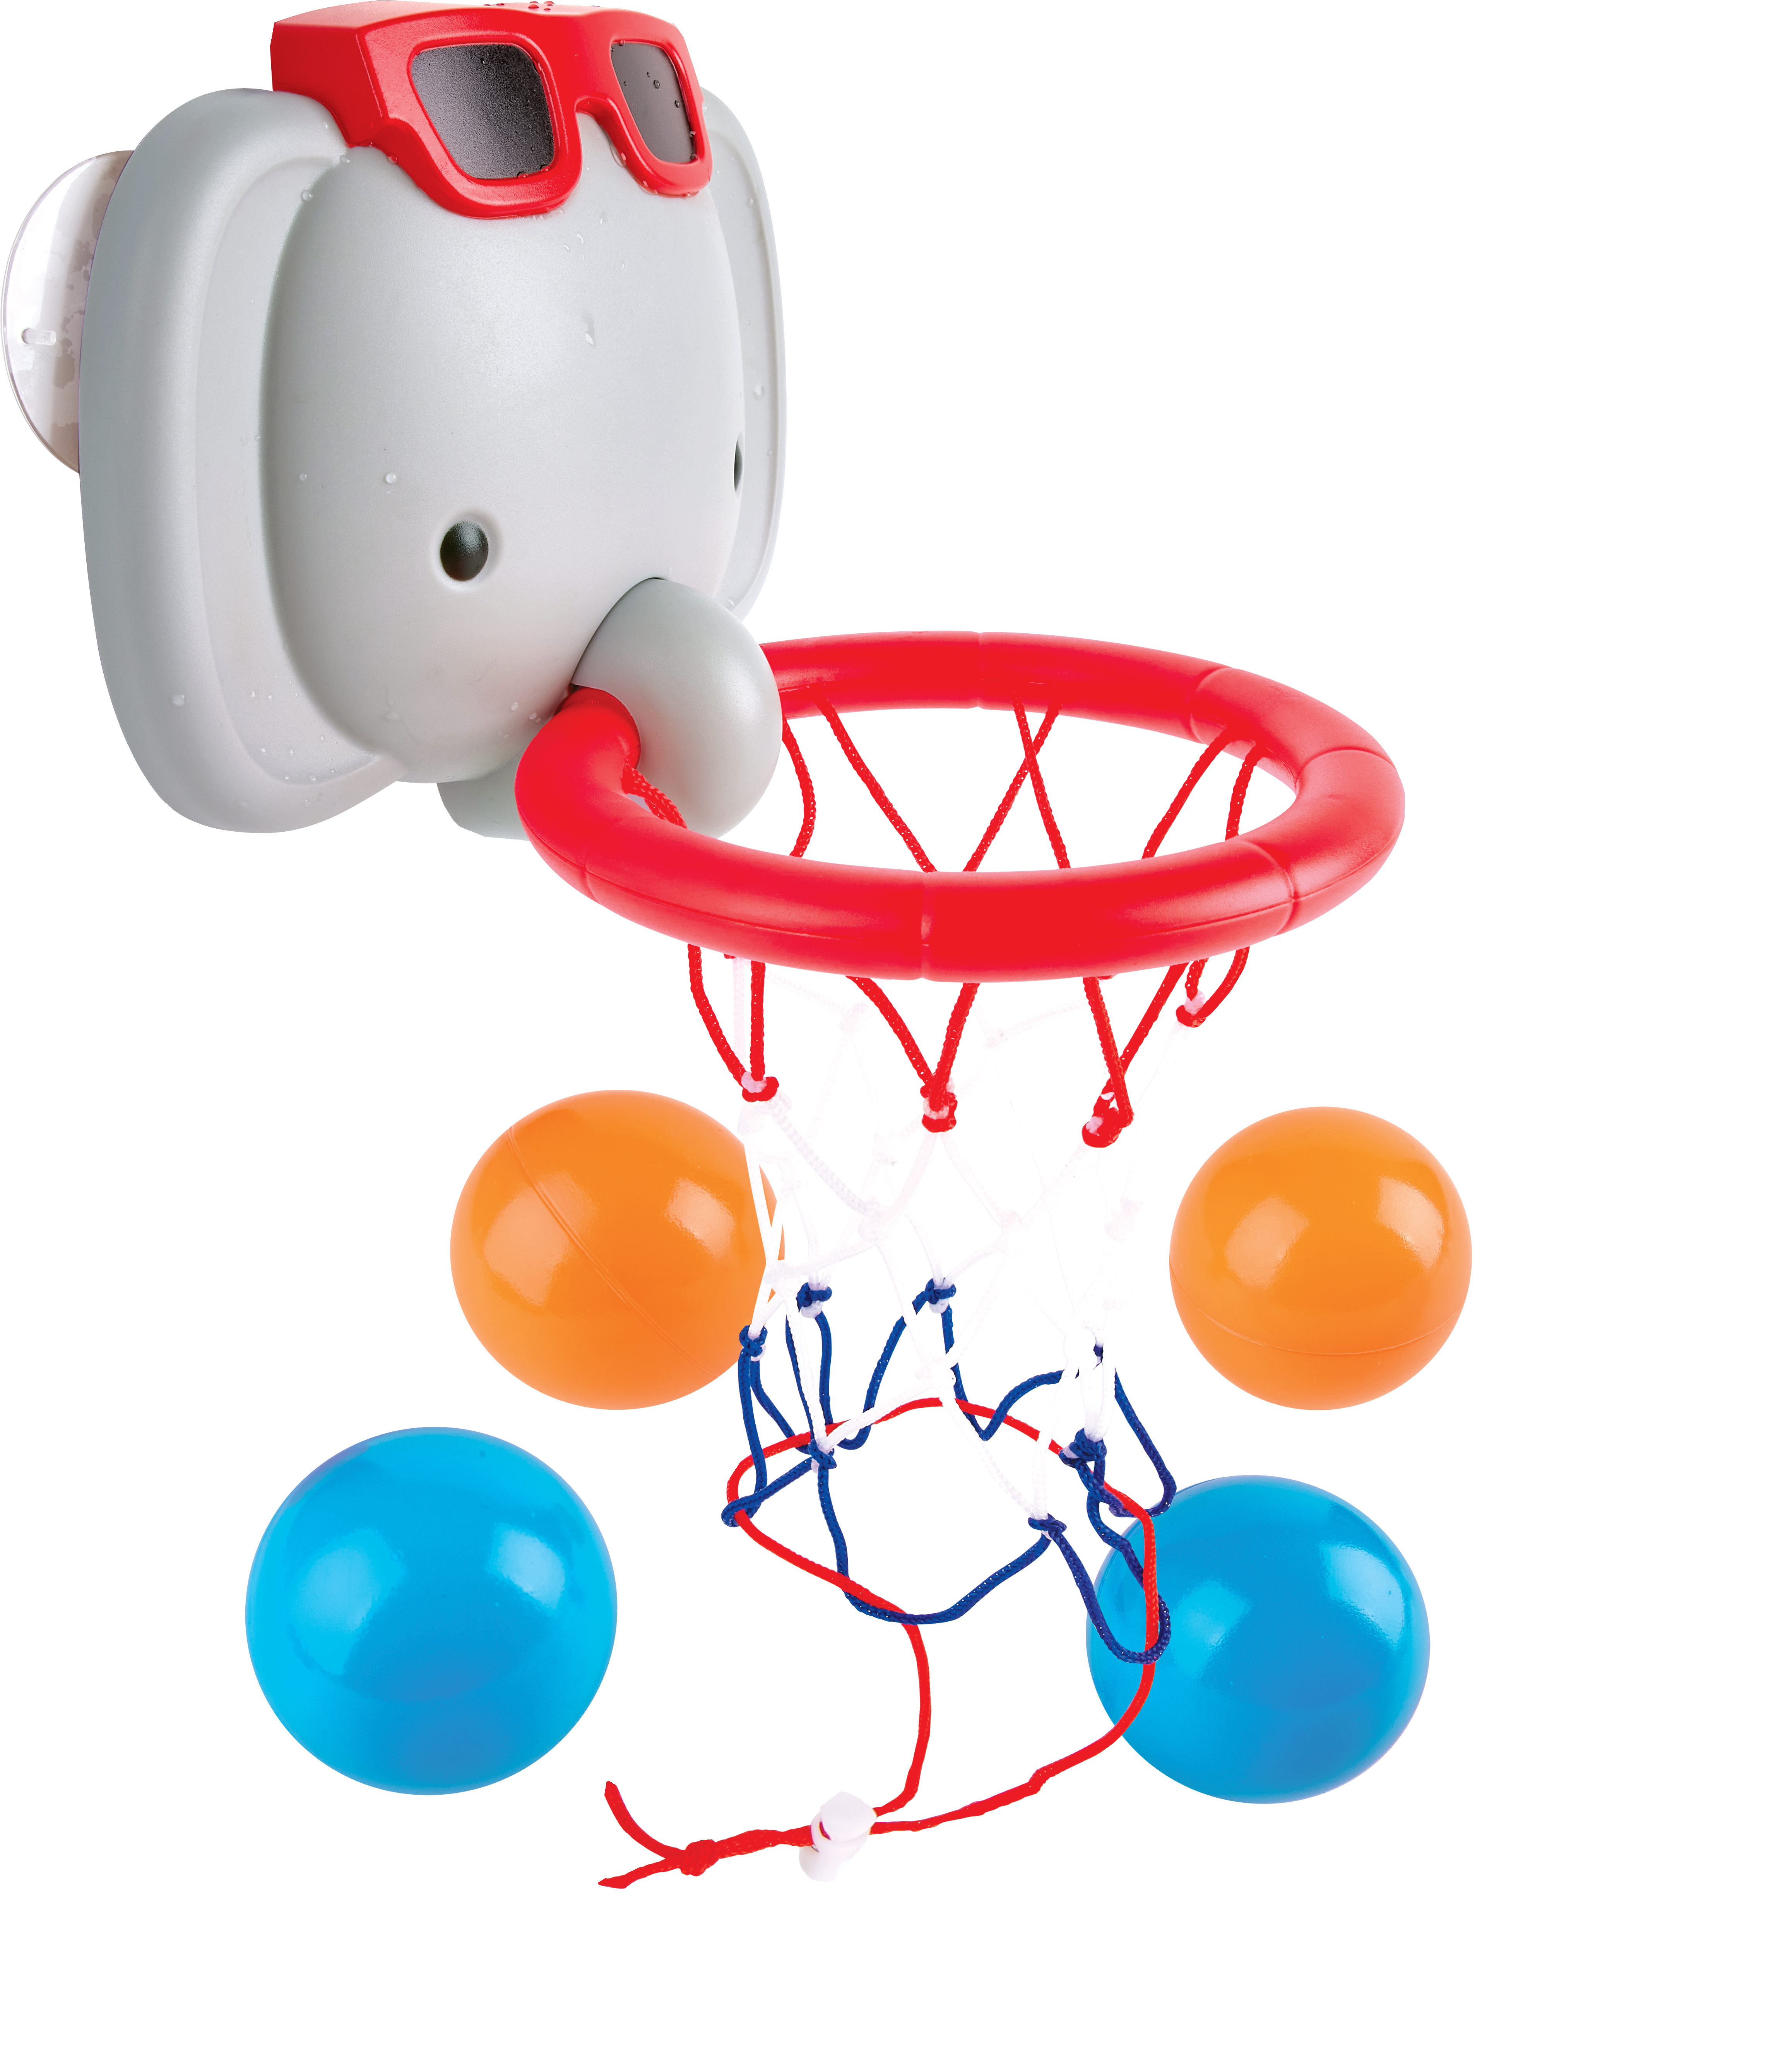 HAPE Spielwaren Badespaß Badespielzeug dem bayw1120 mit Elefanten-Basketballkorb Spielzeug Kleinkind